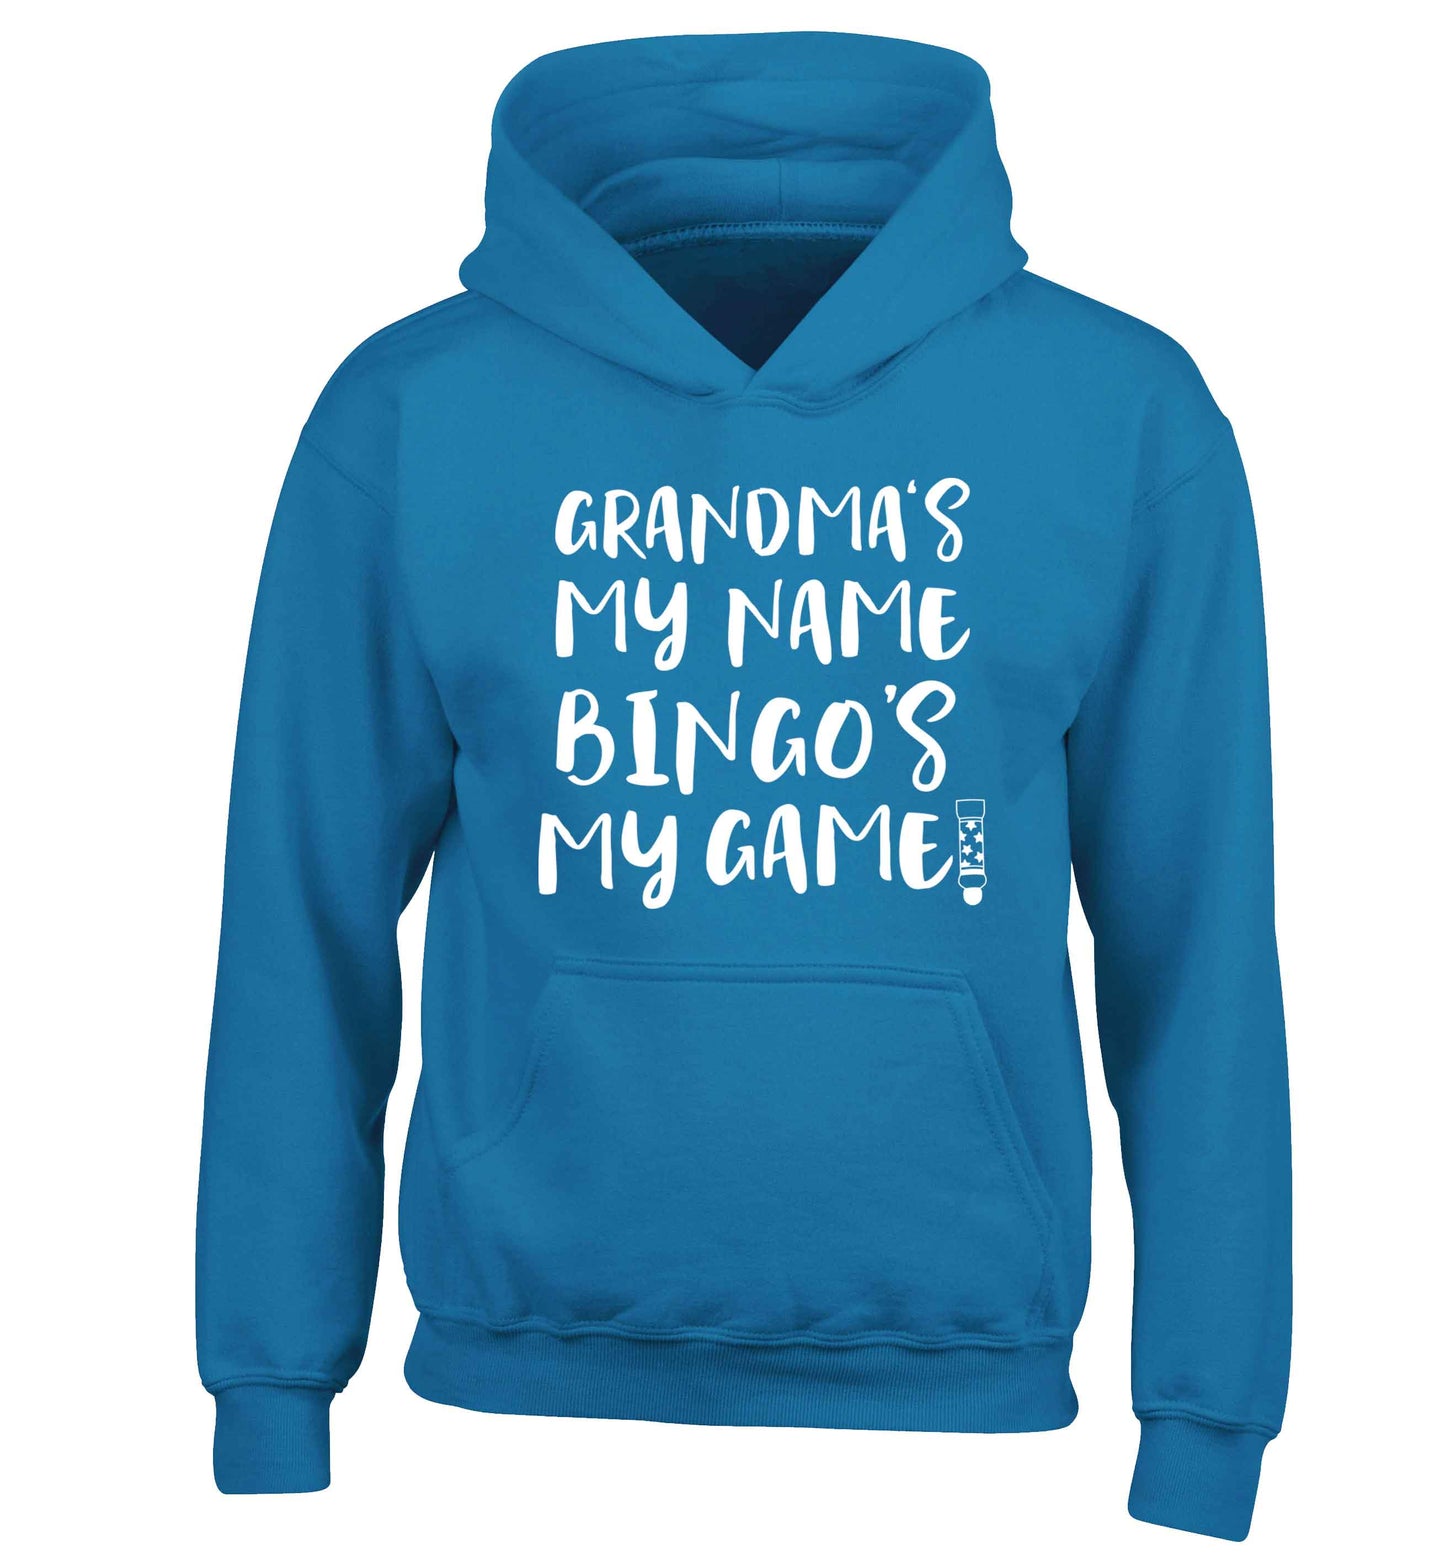 Grandma's my name bingo's my game! children's blue hoodie 12-13 Years